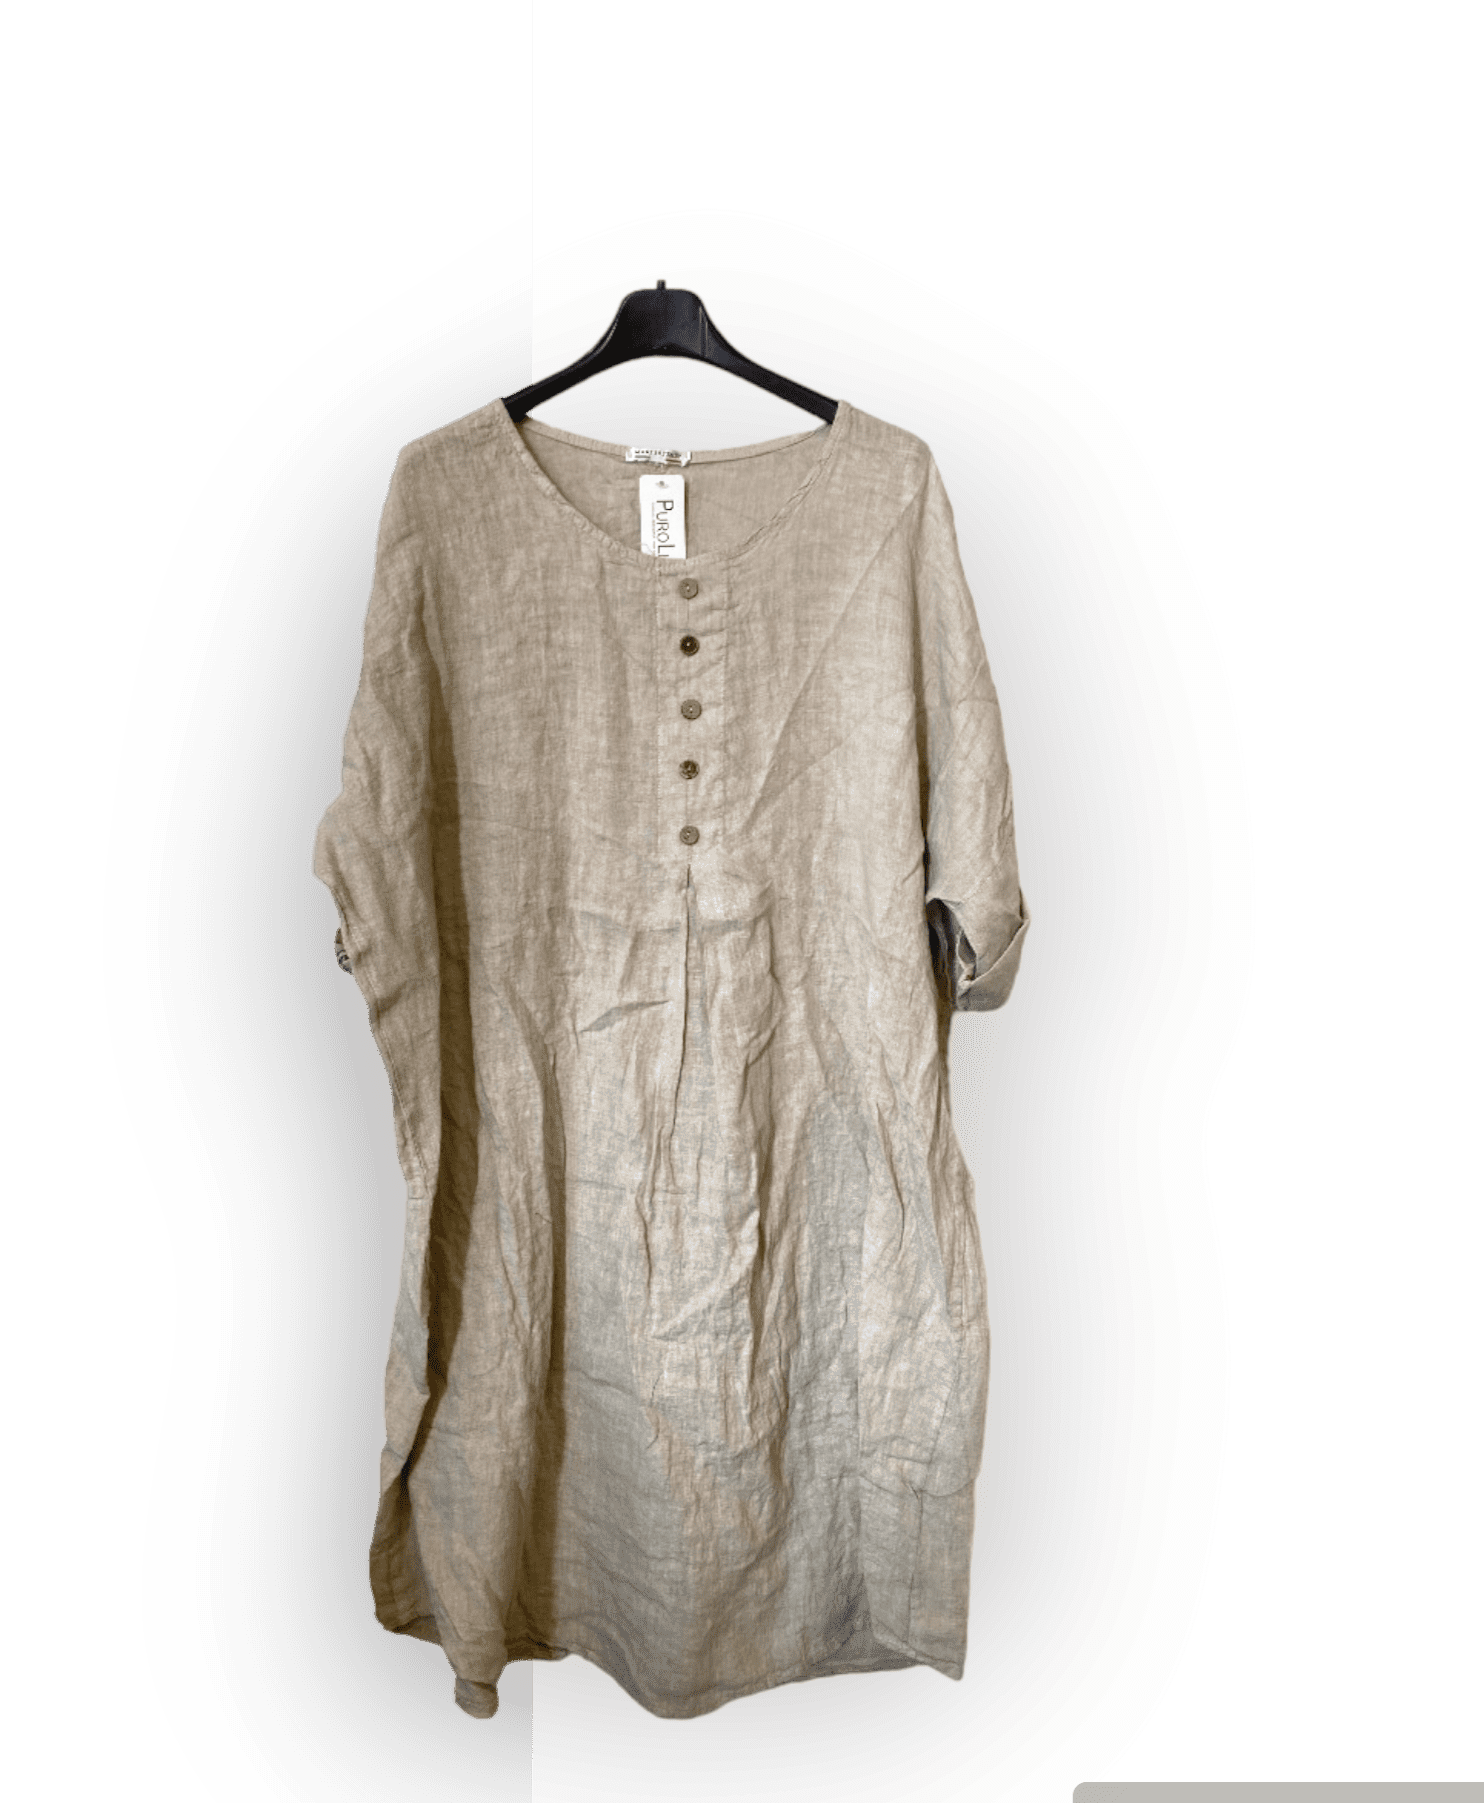 Mooi 100% linnen jurk met korte mouwen en knoppen voorkant - BEIGE kleur - maat 44/46